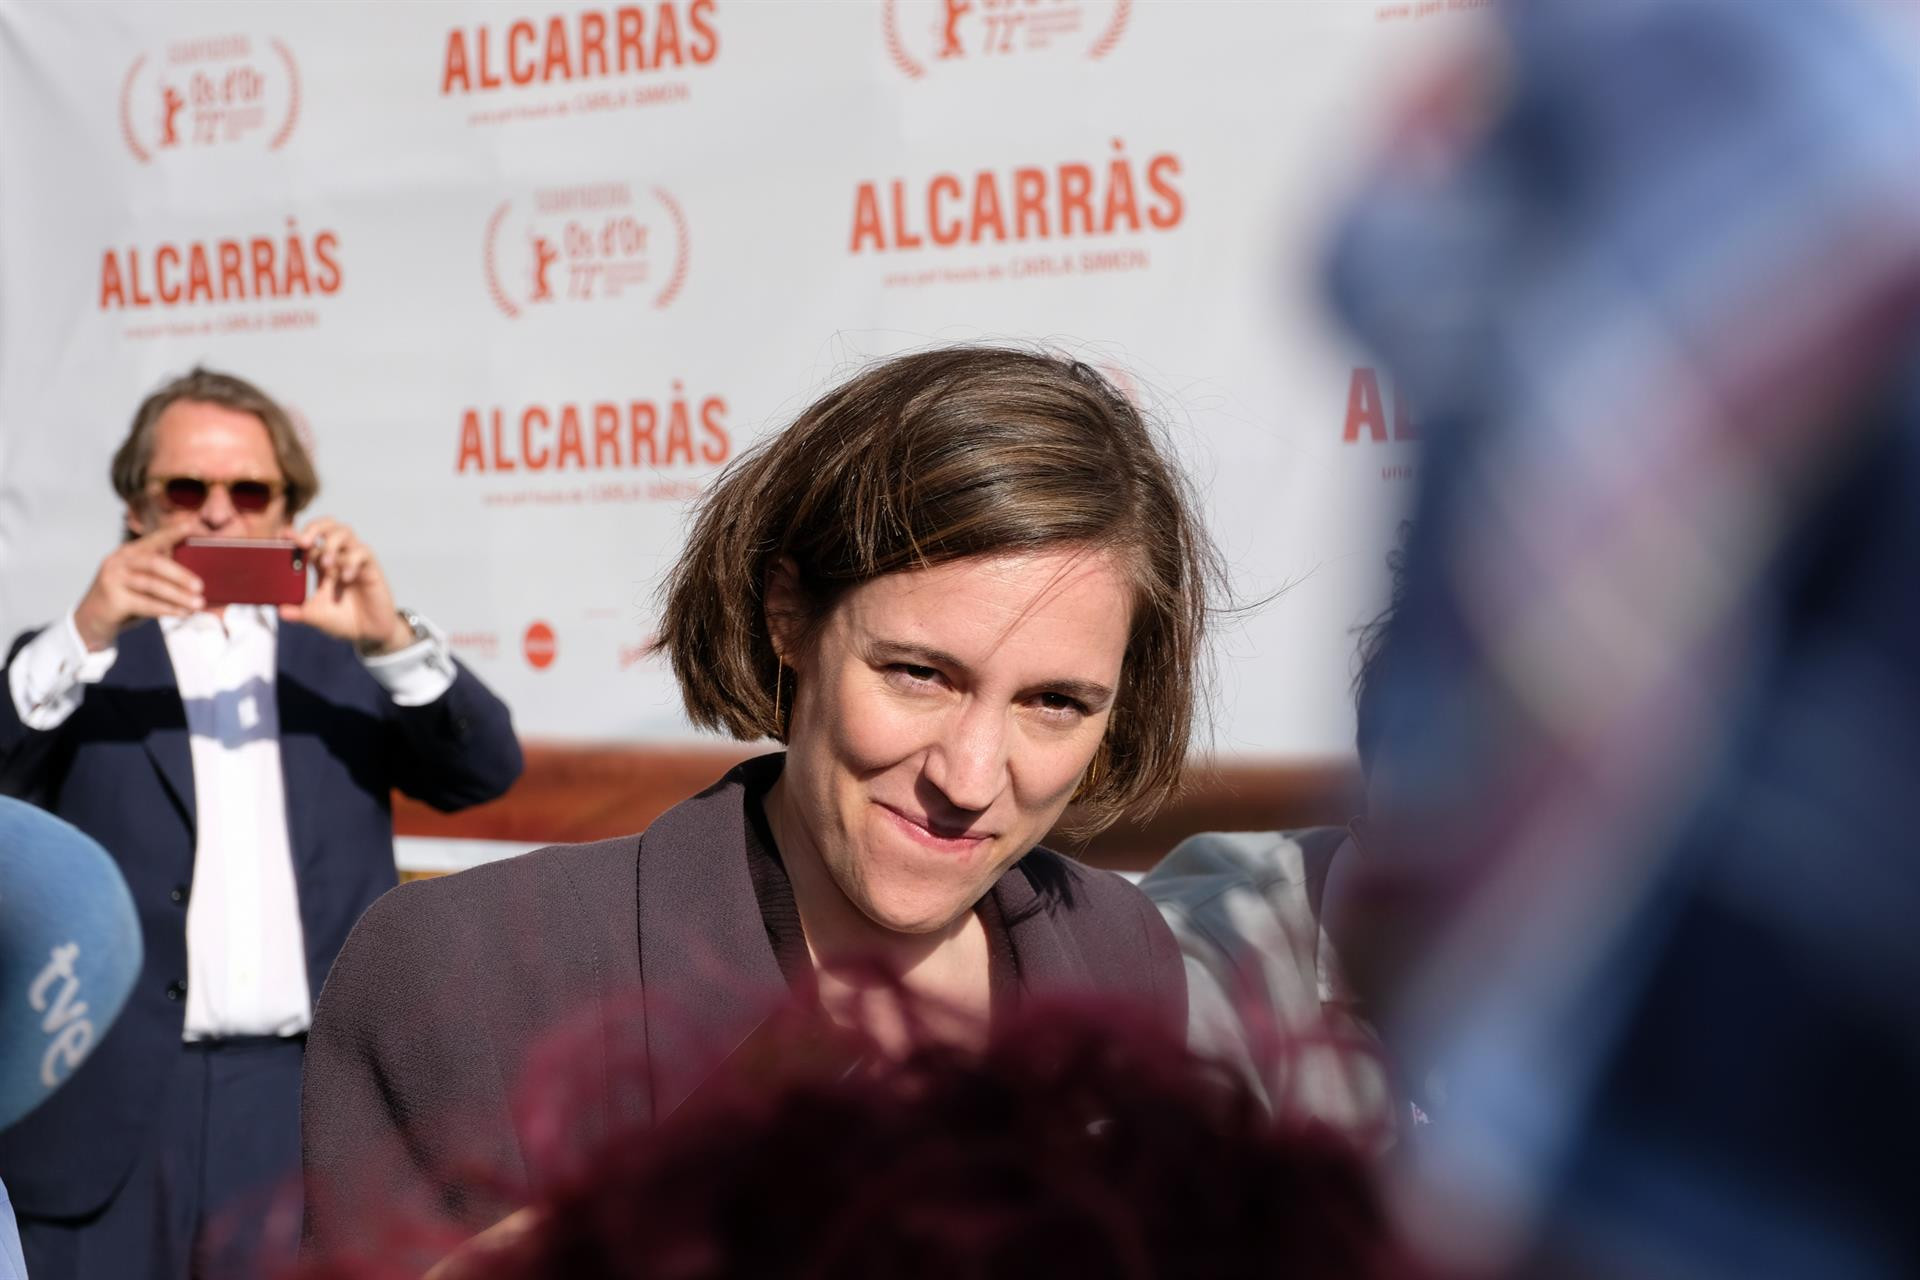 La directora Carla Simón en declaraciones en febrero / EP